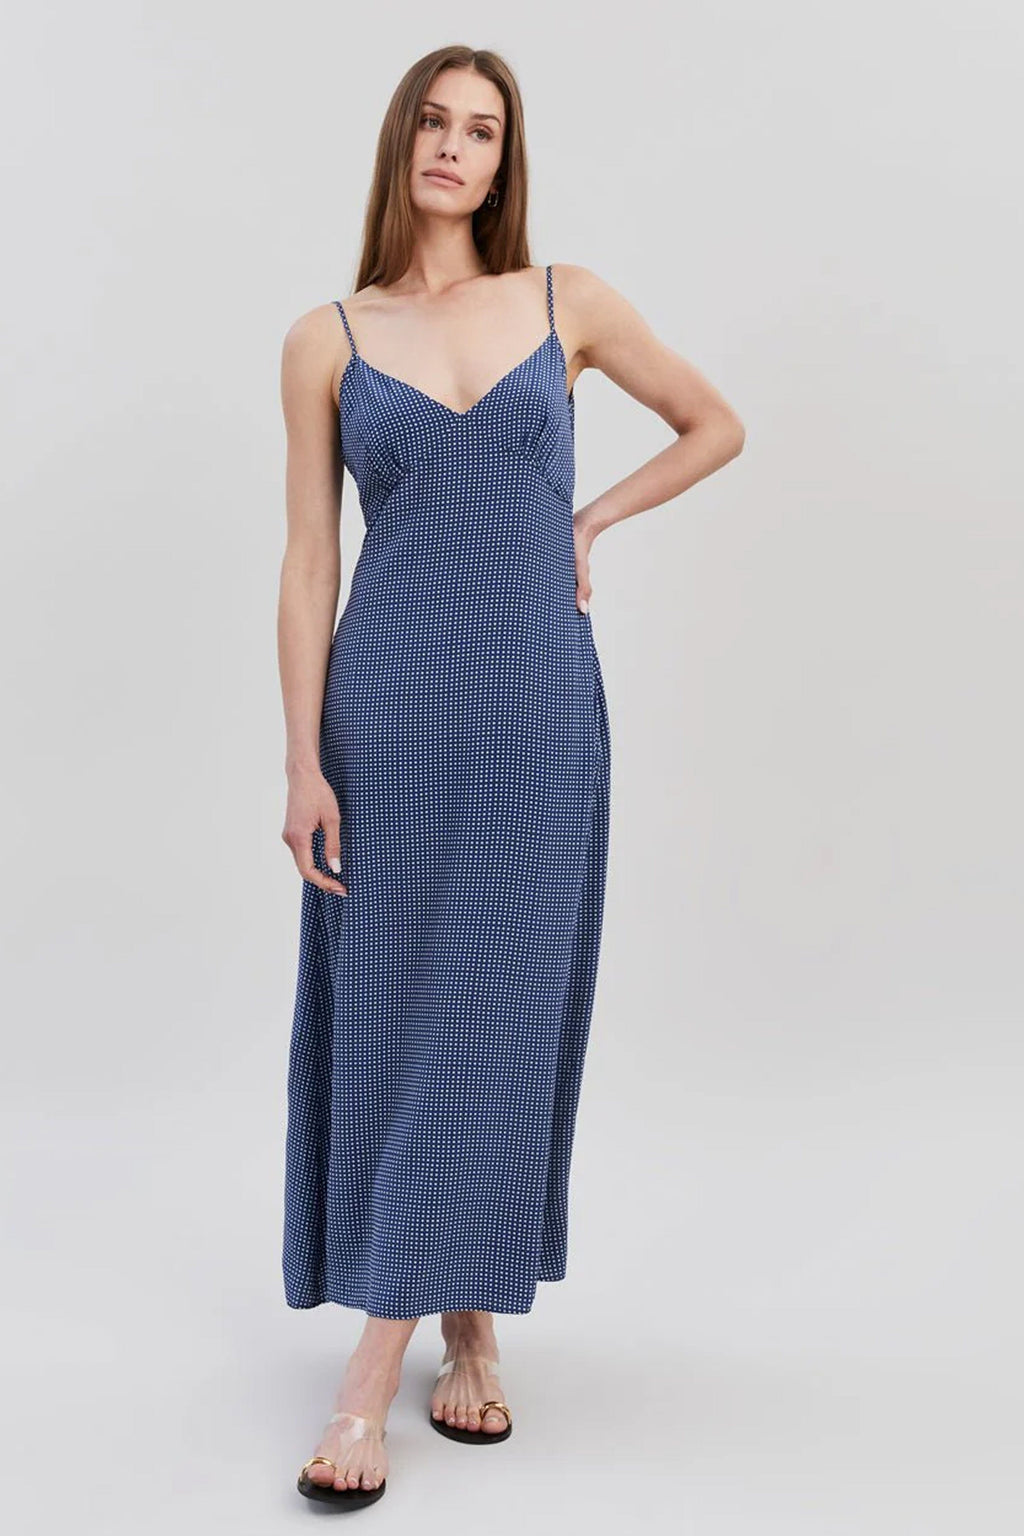 SOLID & STRIPED | The Rosetta Dress - Midnight Blue Polka Dot